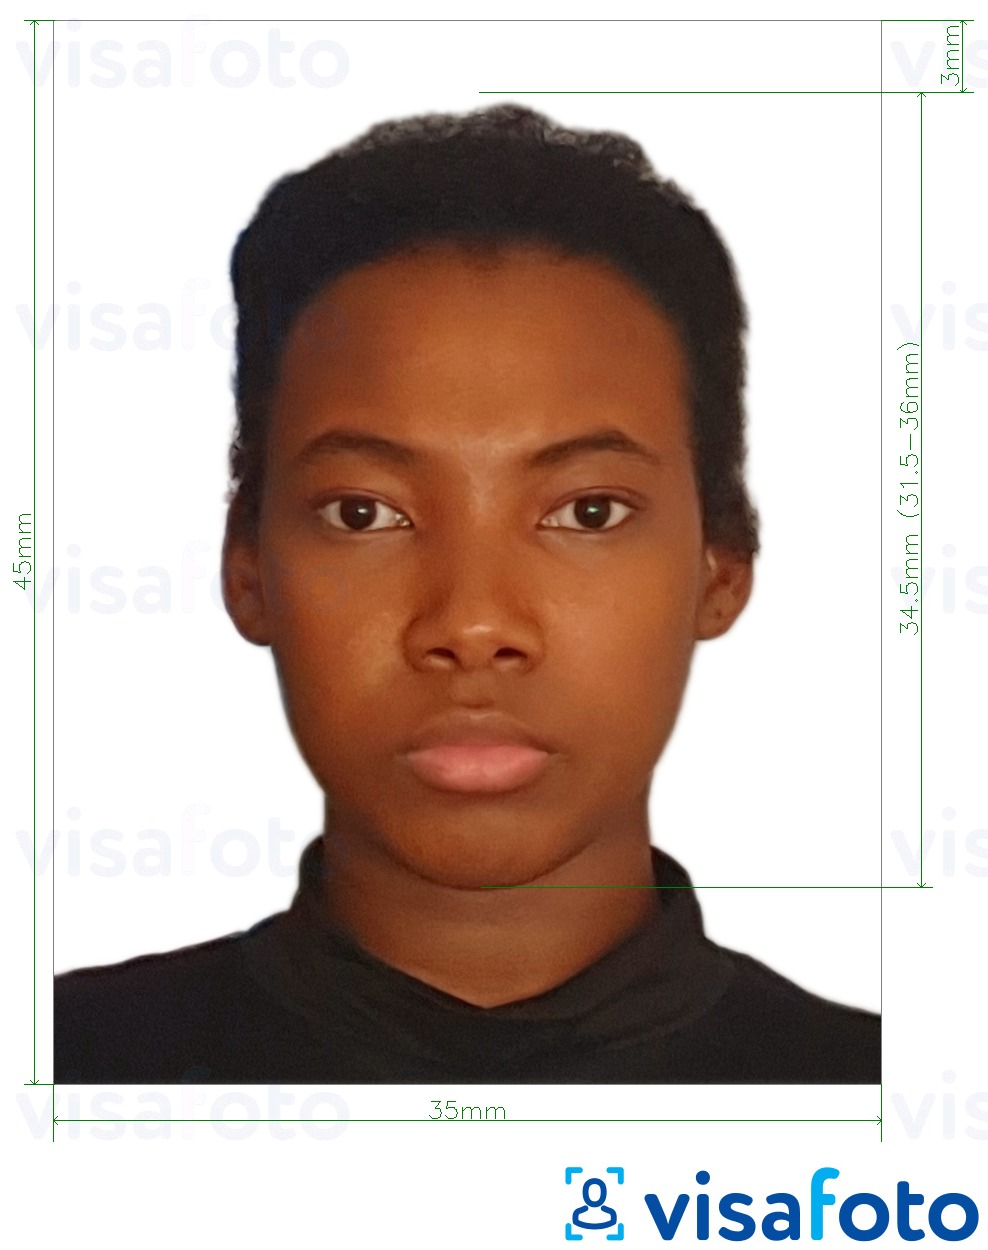 Exemplo de foto para Passaporte dos Camarões 35x45 mm (3.5x4.5 cm) com especificação exata de dimensão